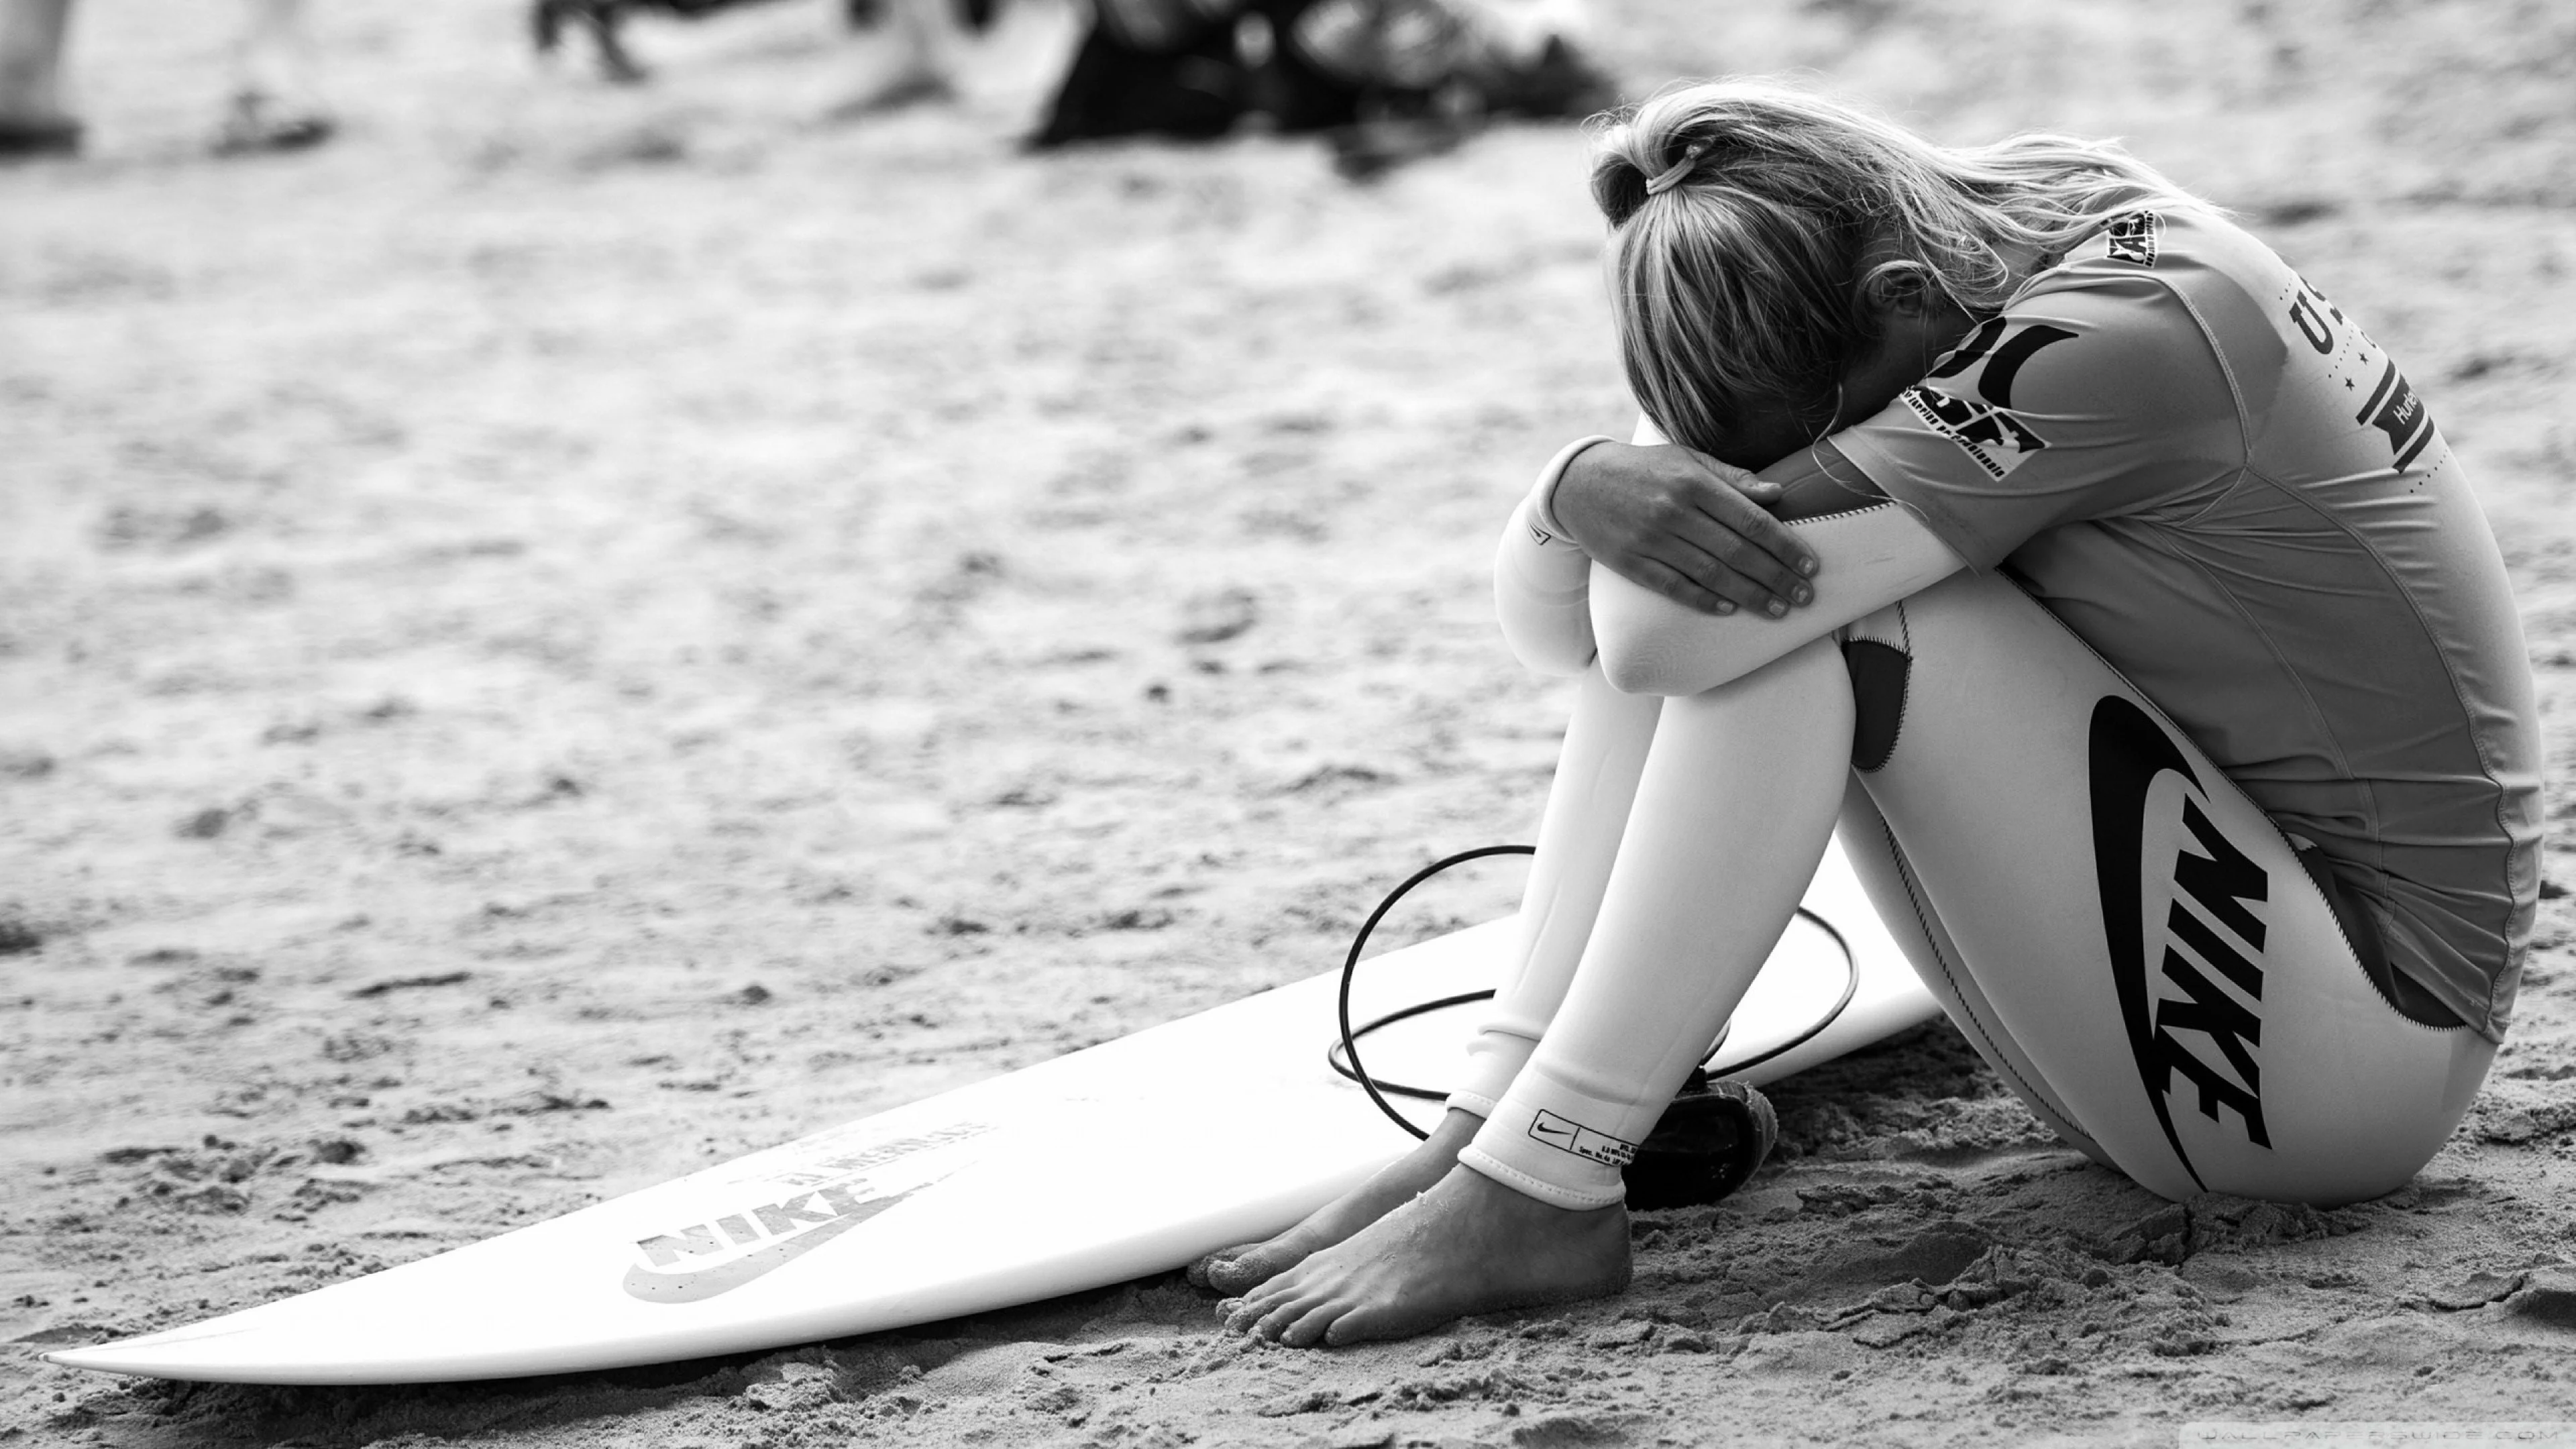 Preview wallpaper surfing, surfer, girl, sport, nike, bw 3840×2160